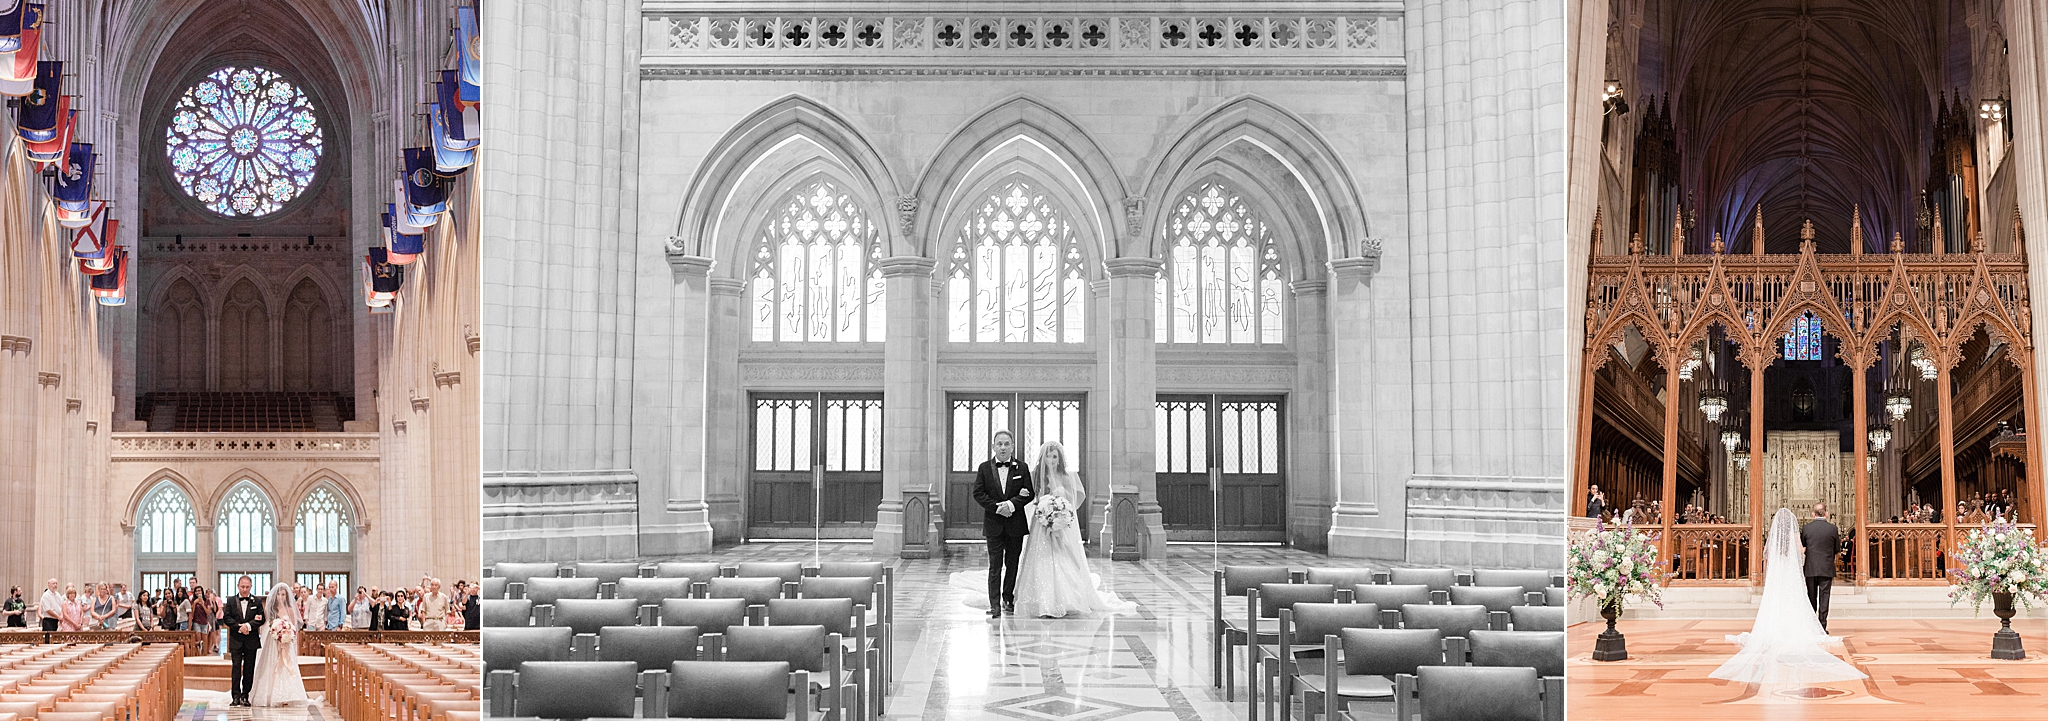 Photos de mariage à la cathédrale nationale de Washington, DC